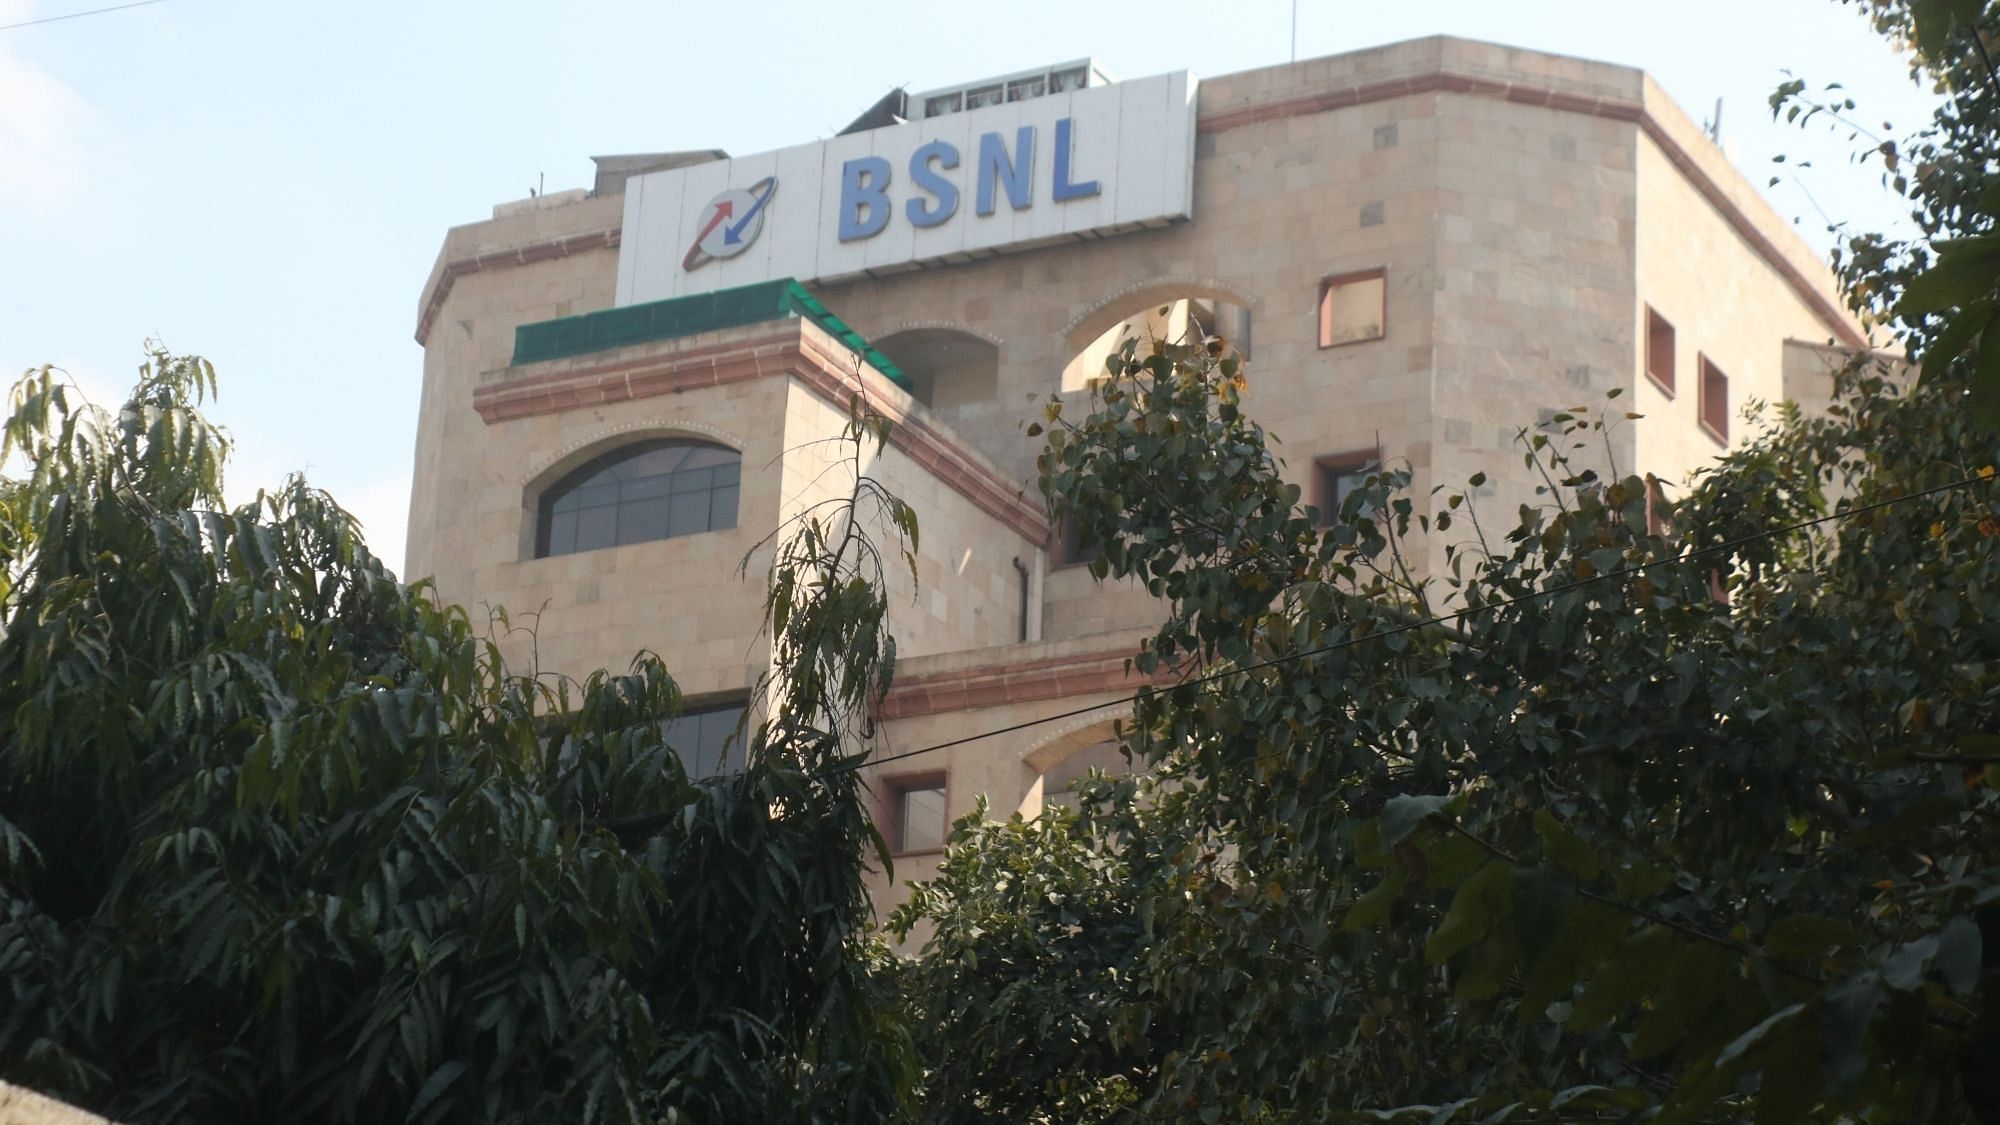 BSNL headquarters in Delhi.